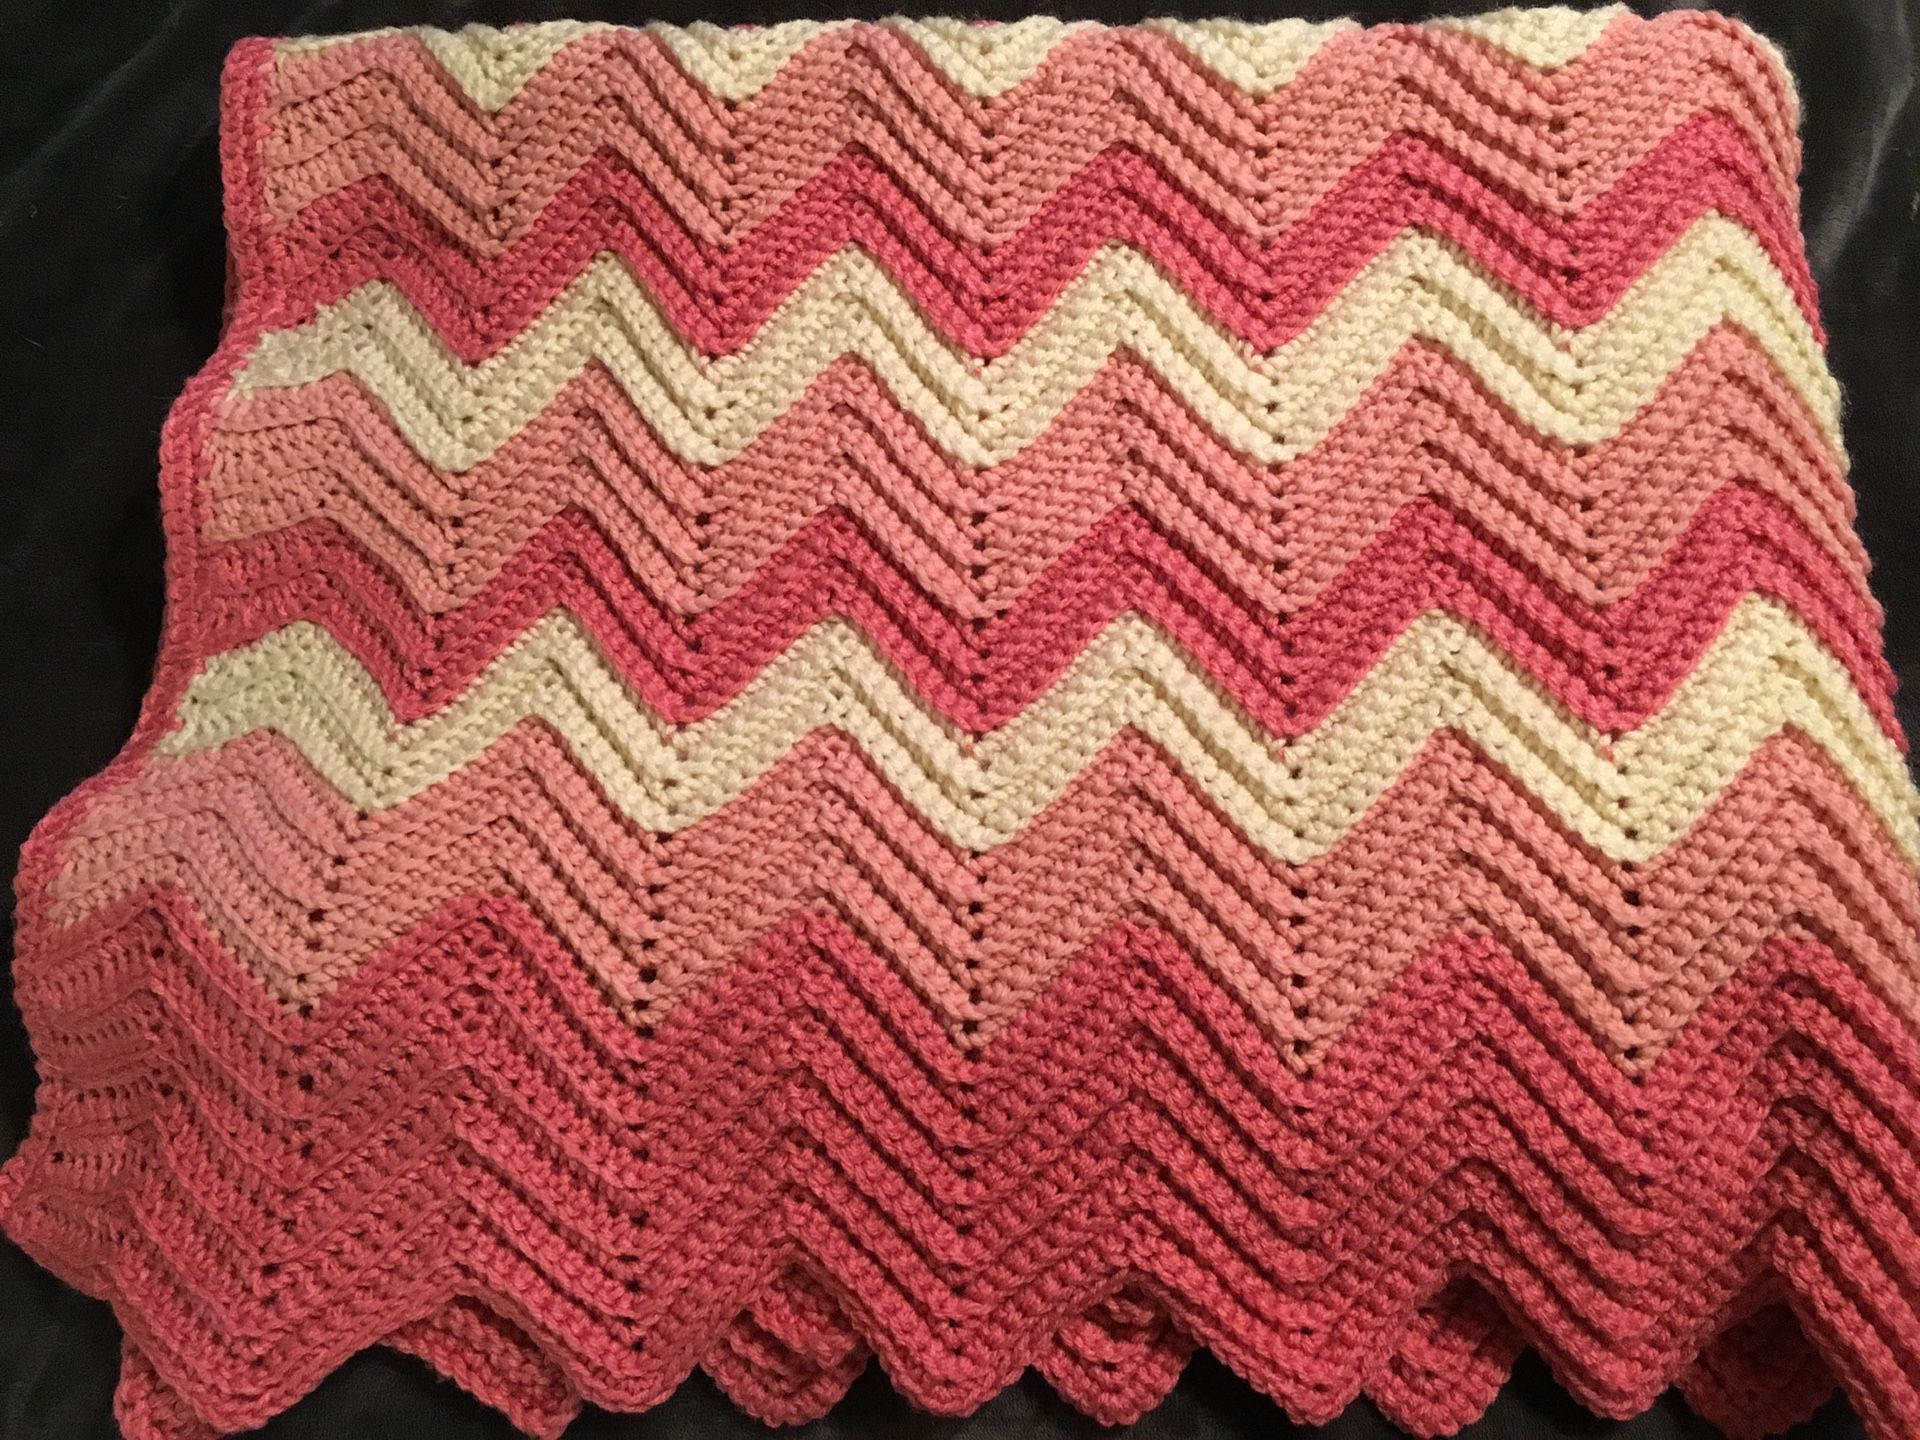 Brand new hand crocheted light lap blanket $40